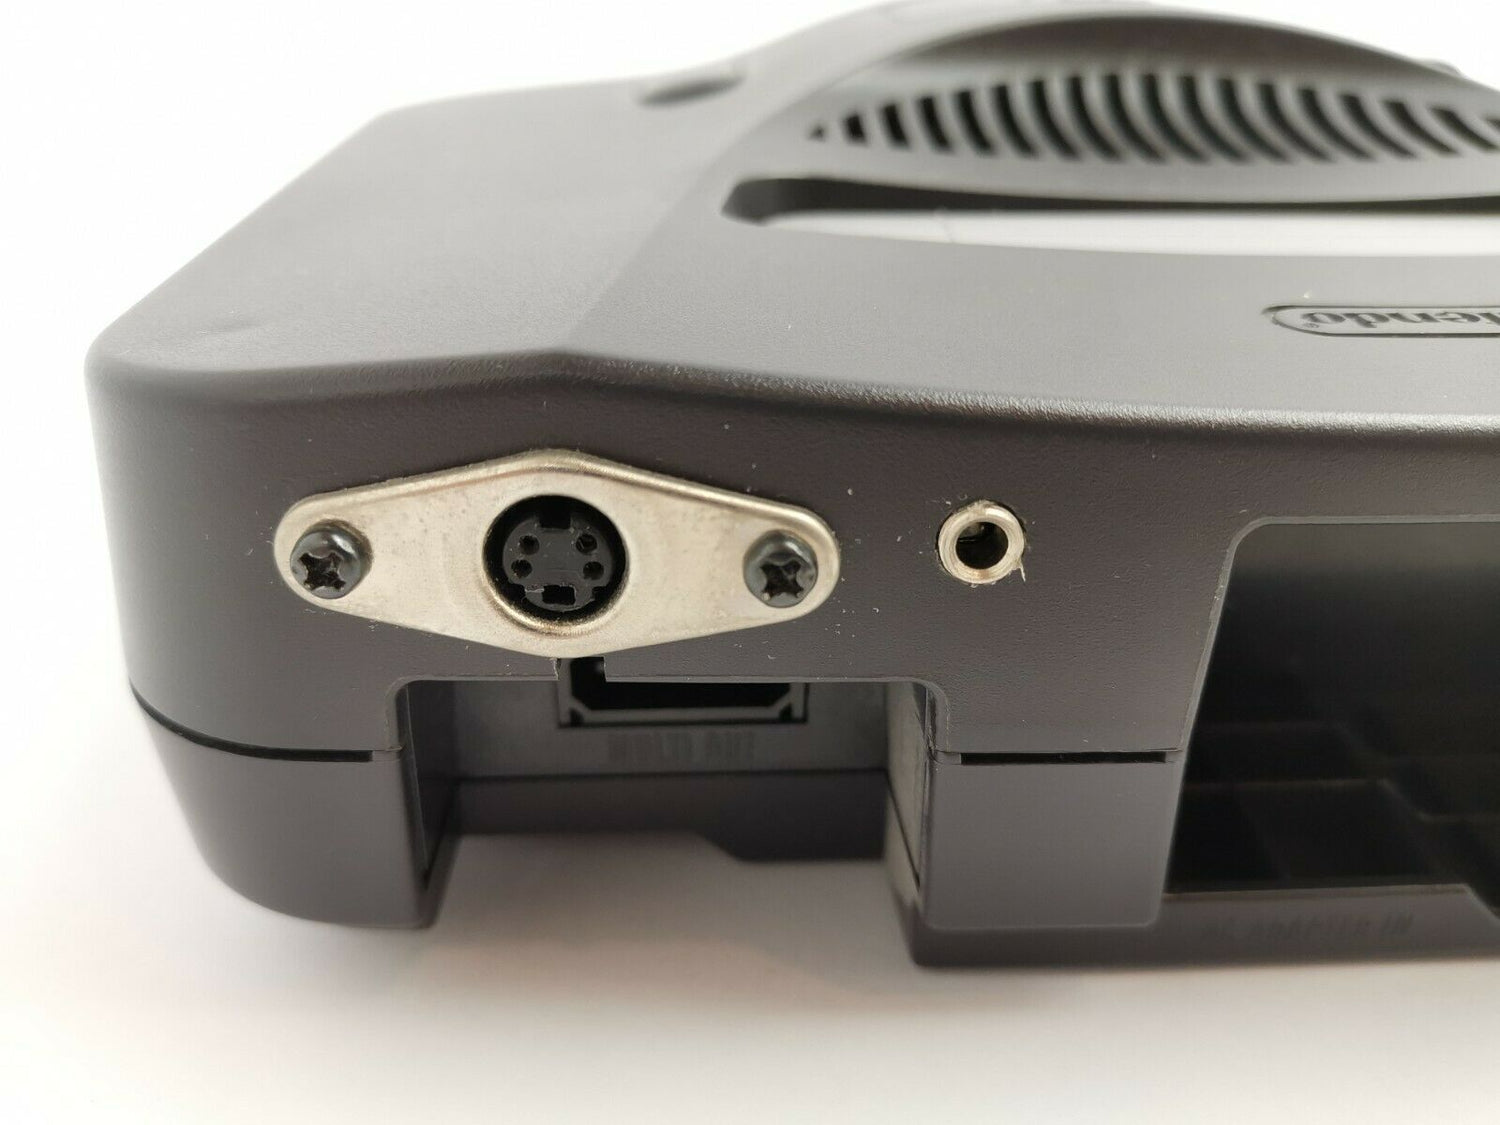 Nintendo 64 Konsole mit S-Video Umbau | N64 | nackte Konsole